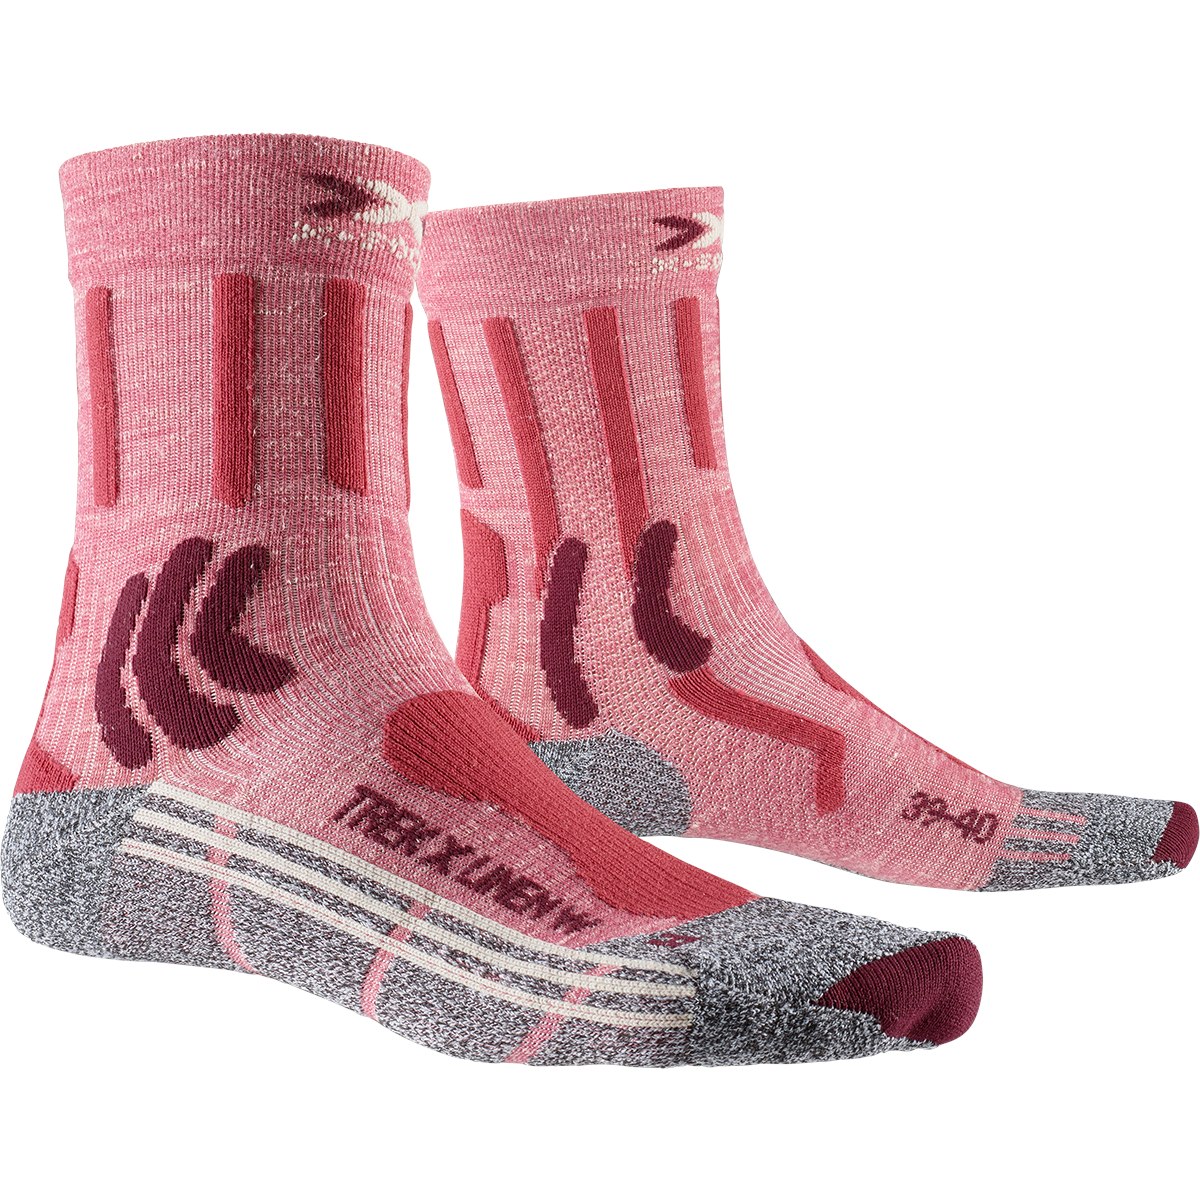 Produktbild von X-Socks Trek X Linen Socken Damen - vintage red melange/grey melange